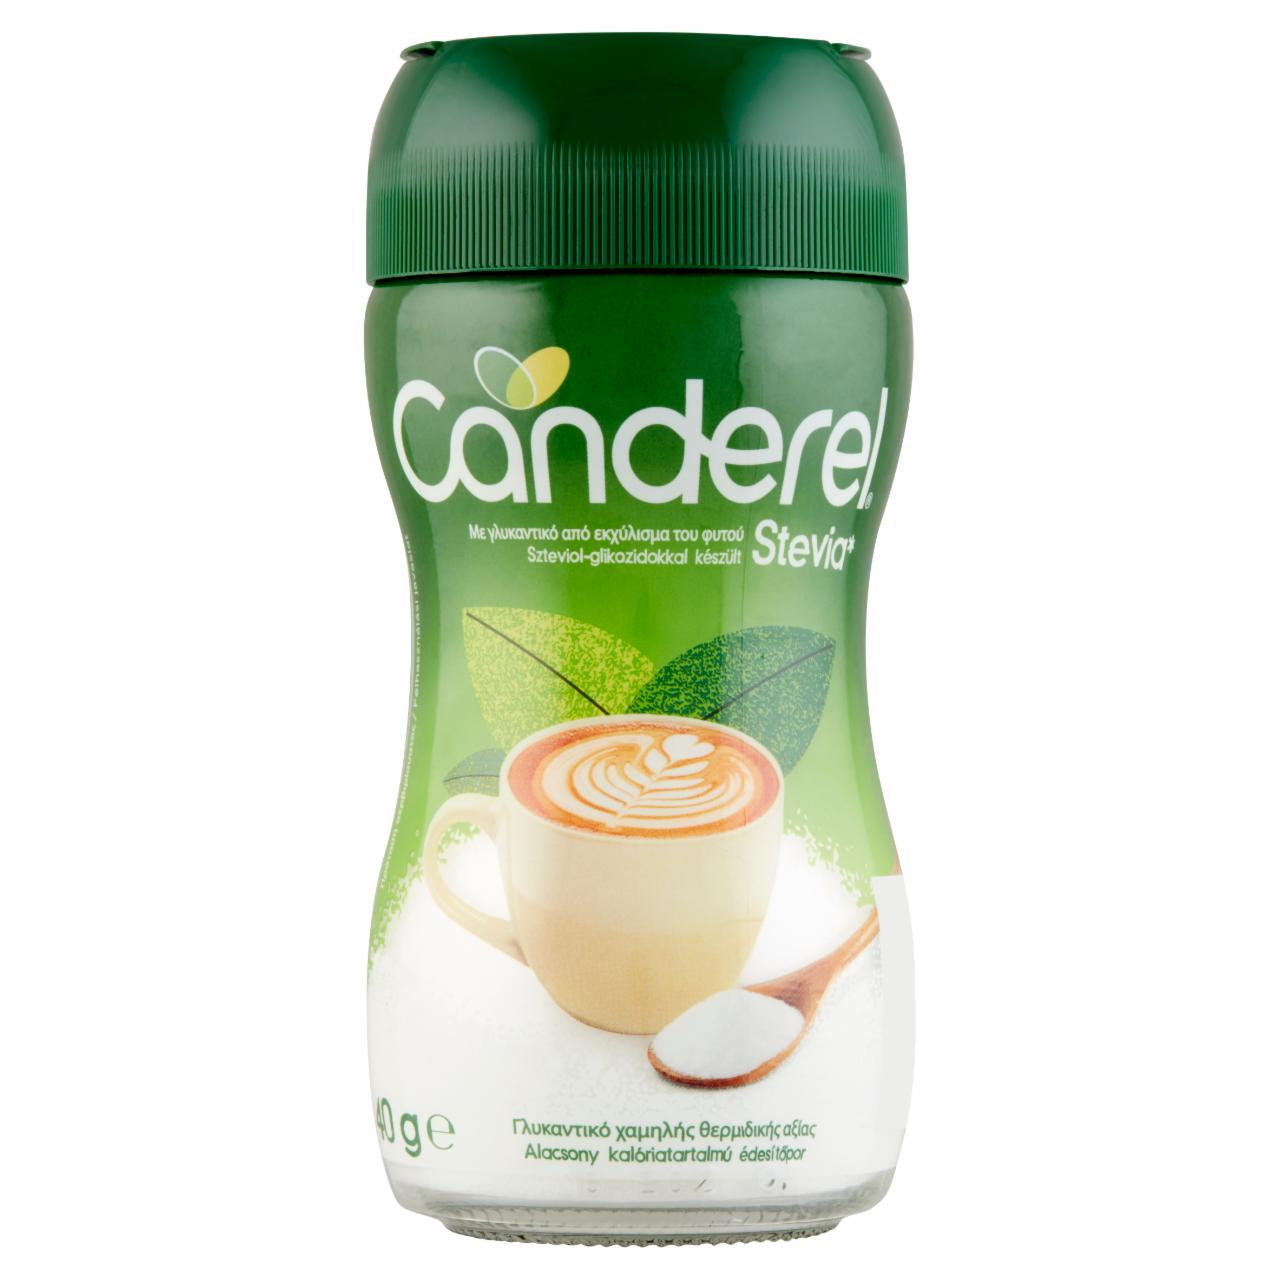 Képek - Canderel Stevia alacsony kalóriatartalmú édesítőpor 40 g